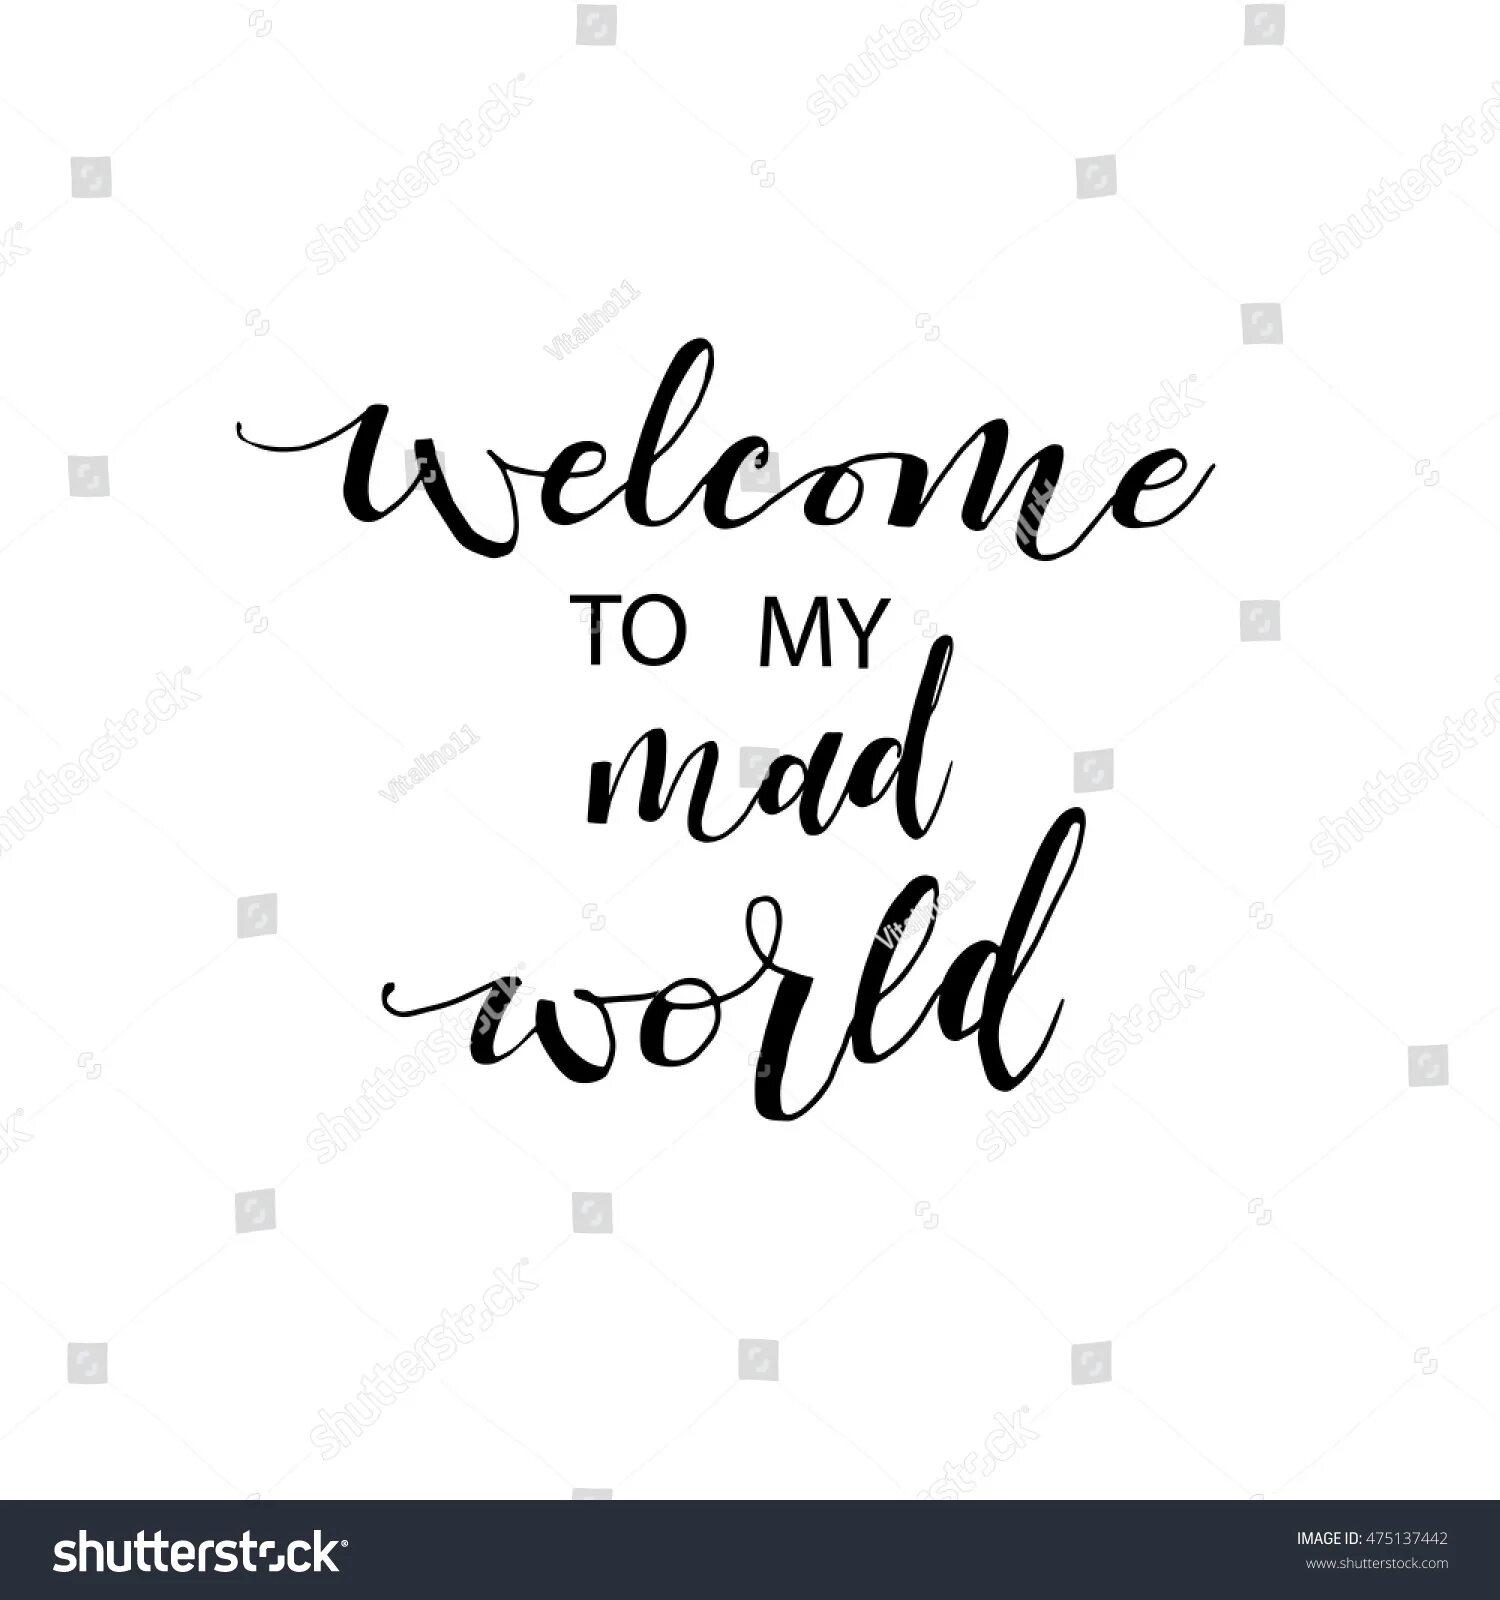 Welcome to my World. Welcome my Mad World. Welcome to my World картинка. Обои велком my Mad World. Welcome to my world robin